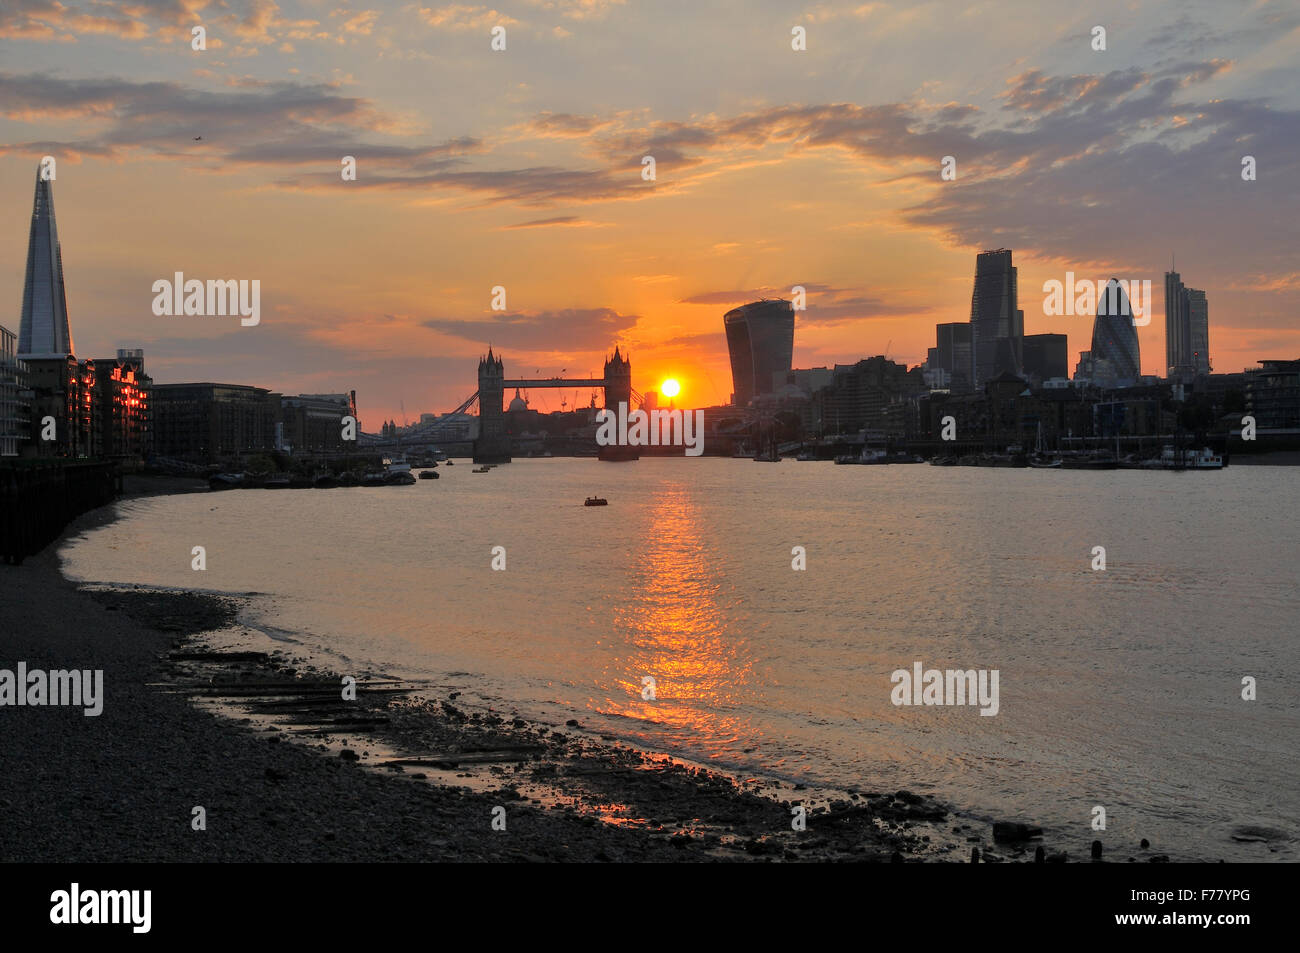 Die City of London und Tower Bridge bei Sonnenuntergang vom South Bank of the Thames, London, Großbritannien Stockfoto